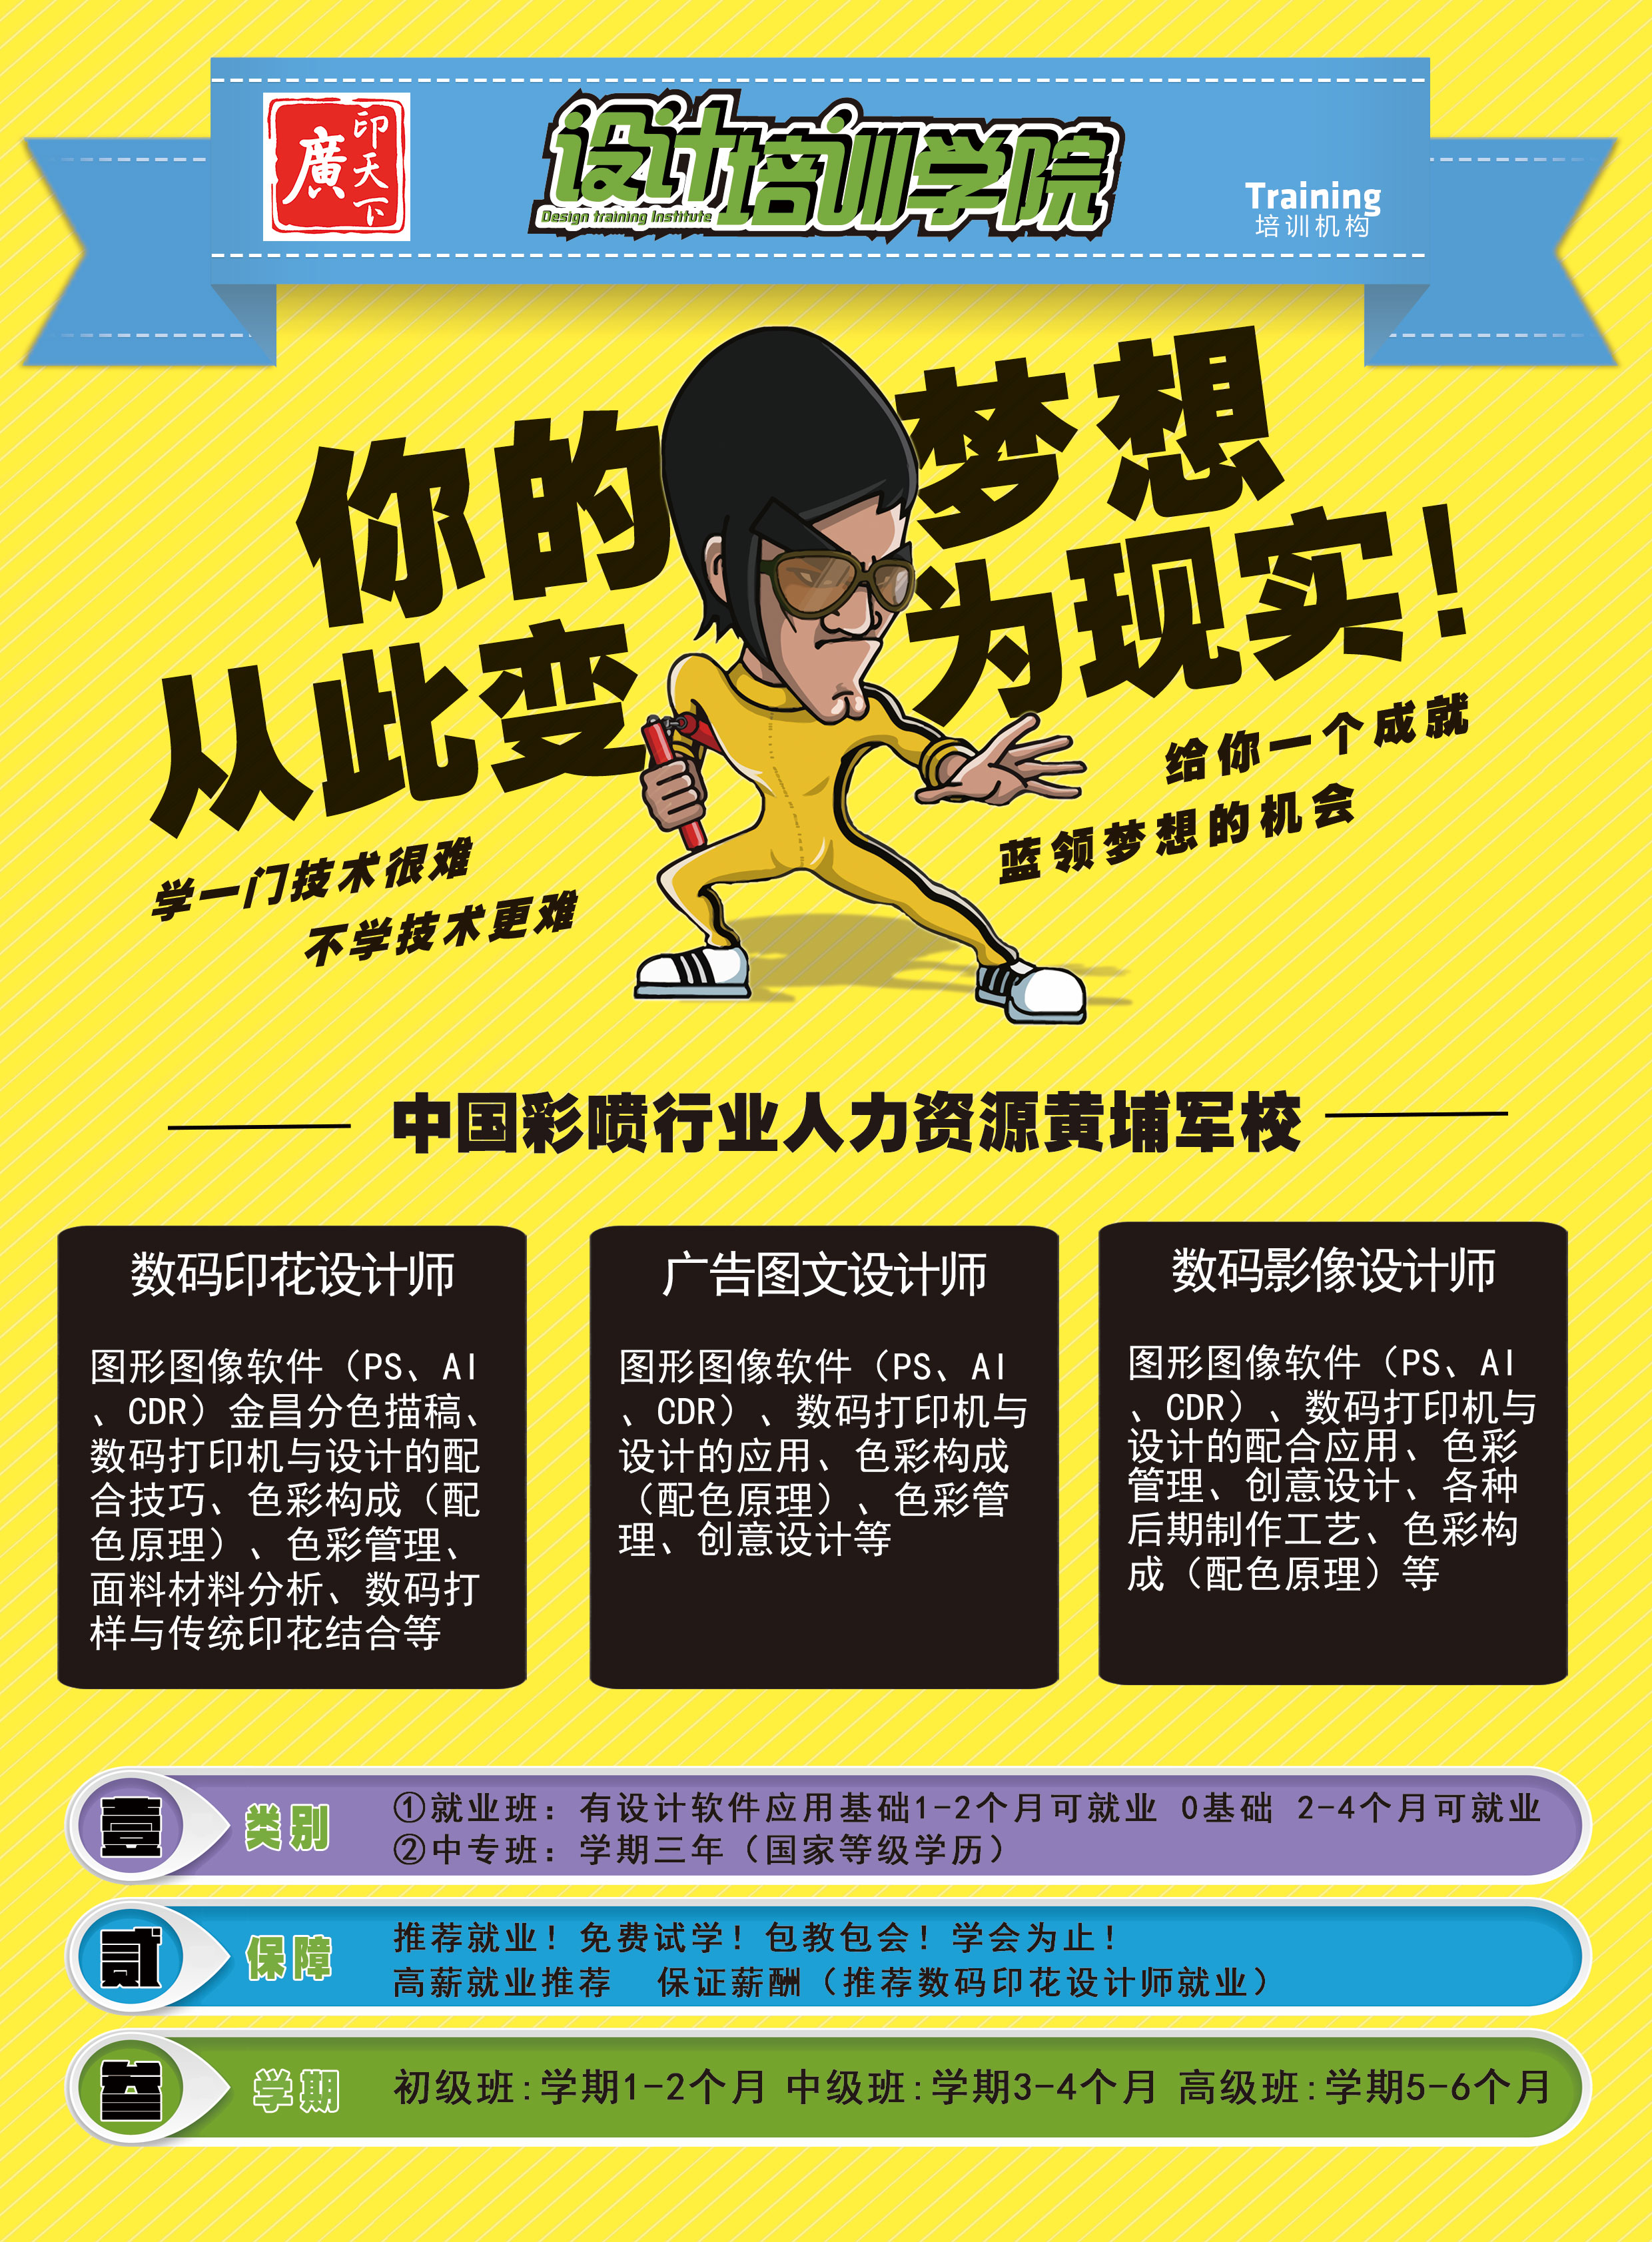 爱普生加密 手机壳打印机官网 广州彩喷行电子商务有限公司